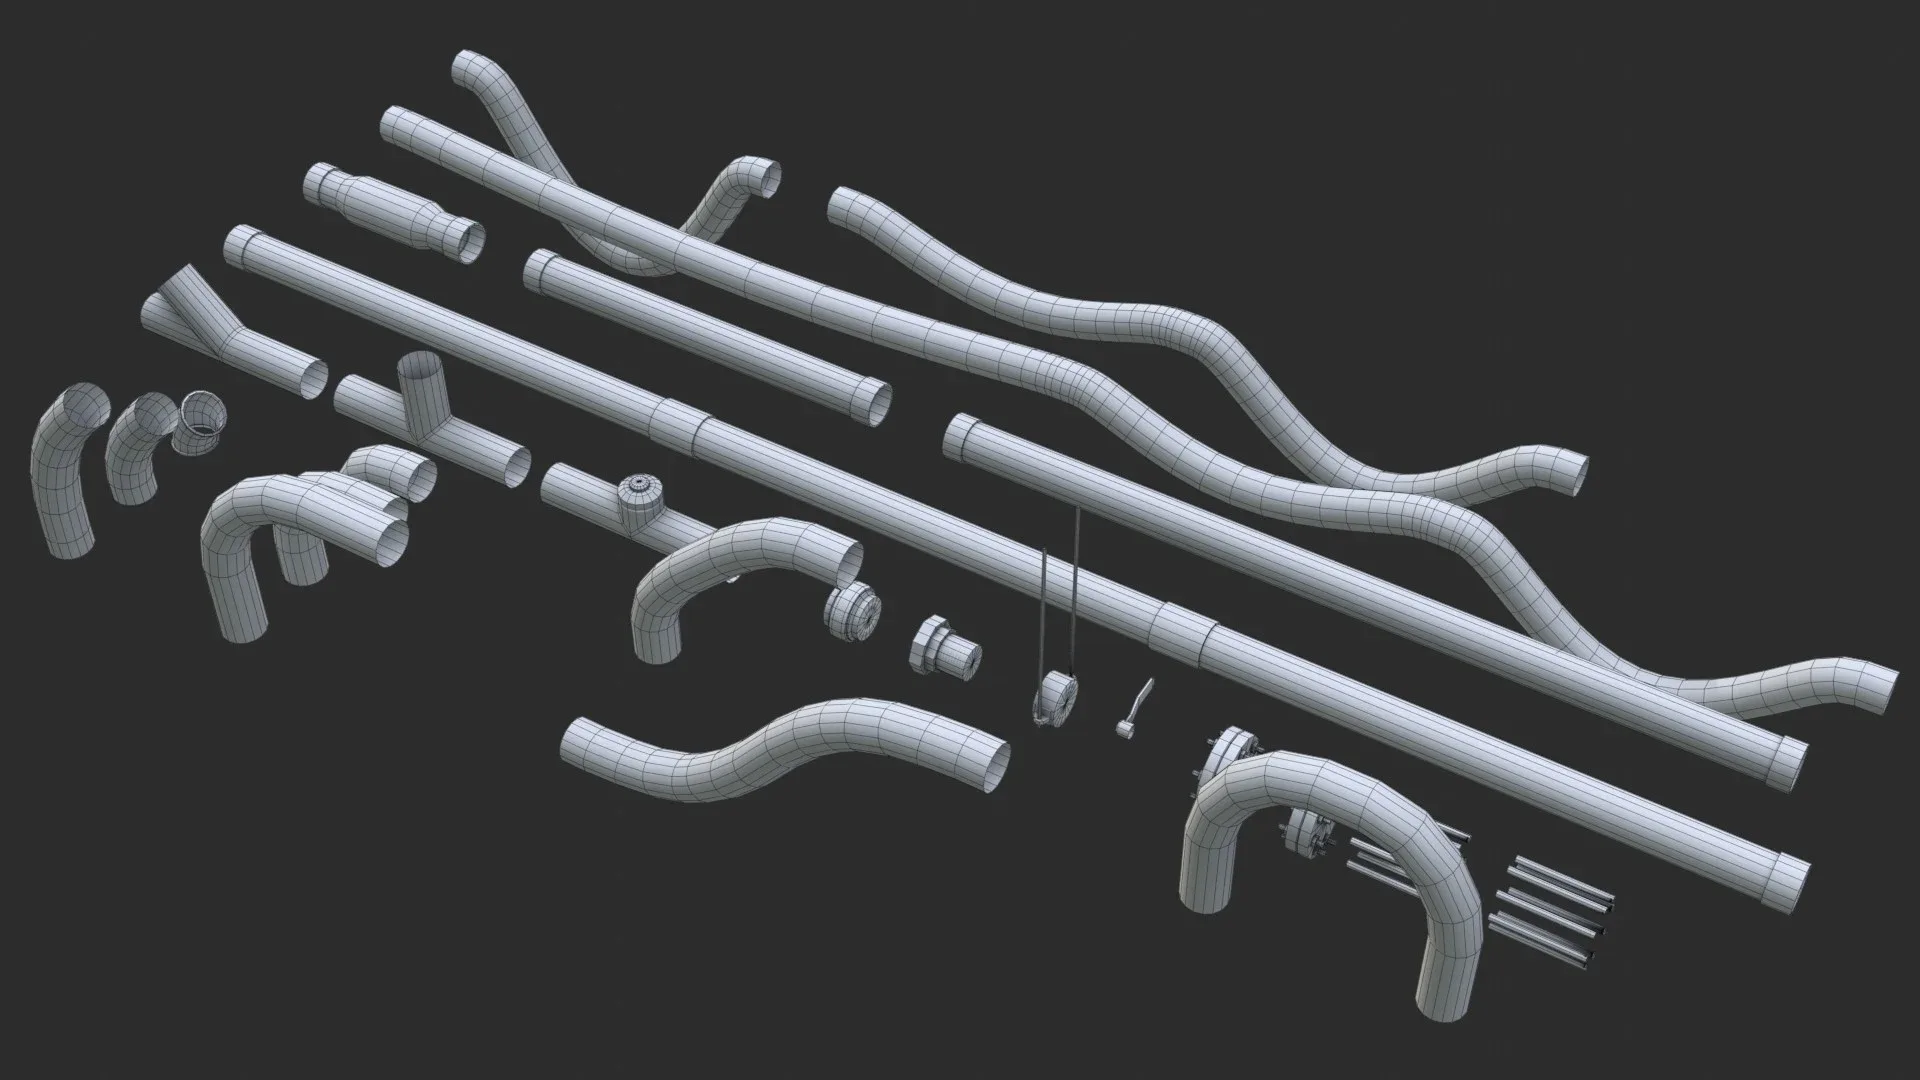 Modular Pipes - Sci-Fi Heat Metal